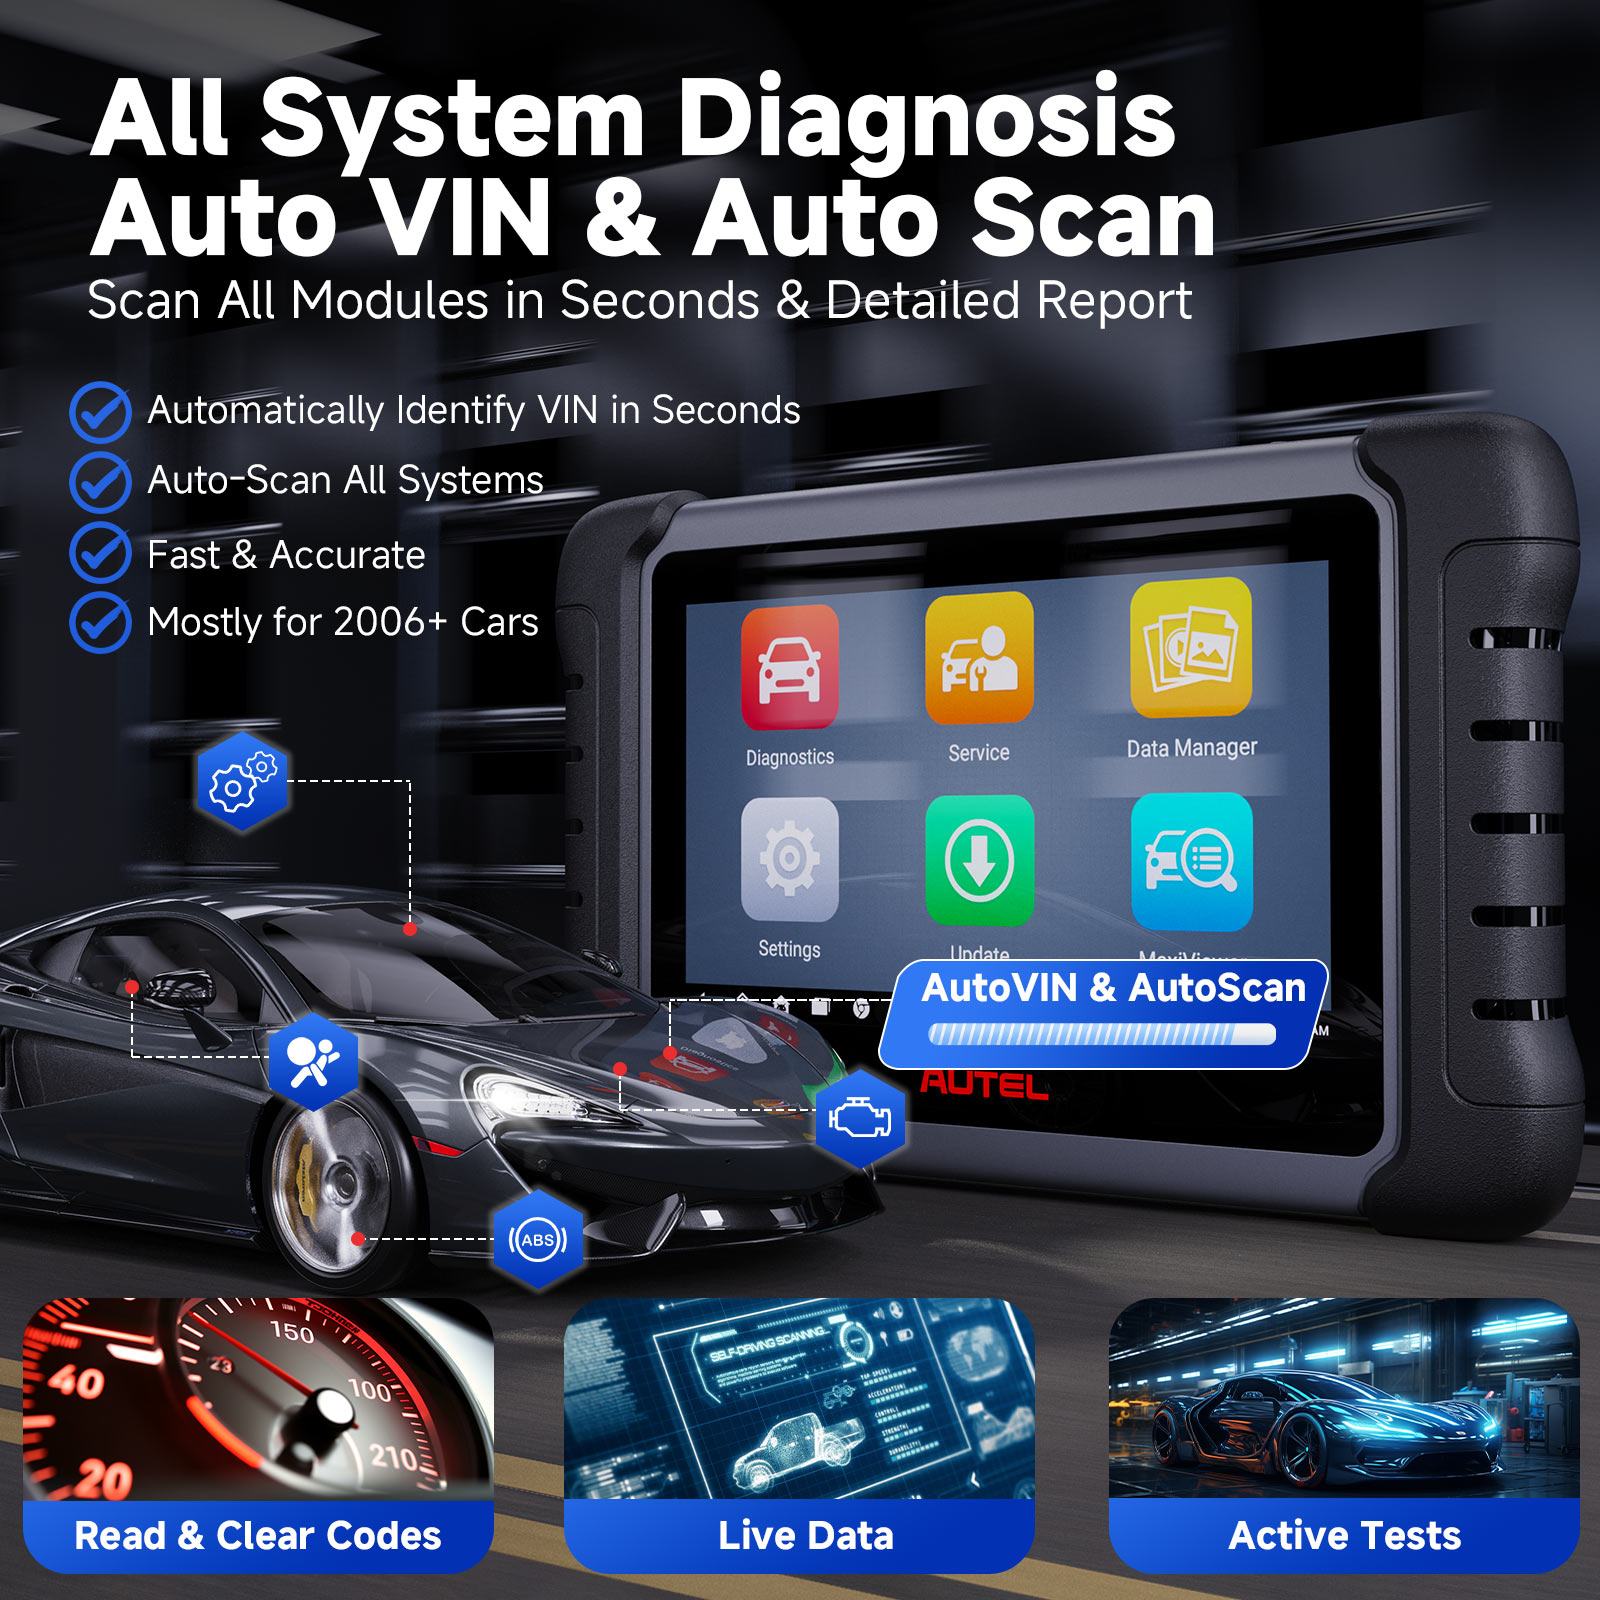 Autel MaxiCOM MK808Z Car Diagnostic Obd2 Scanner Tool –